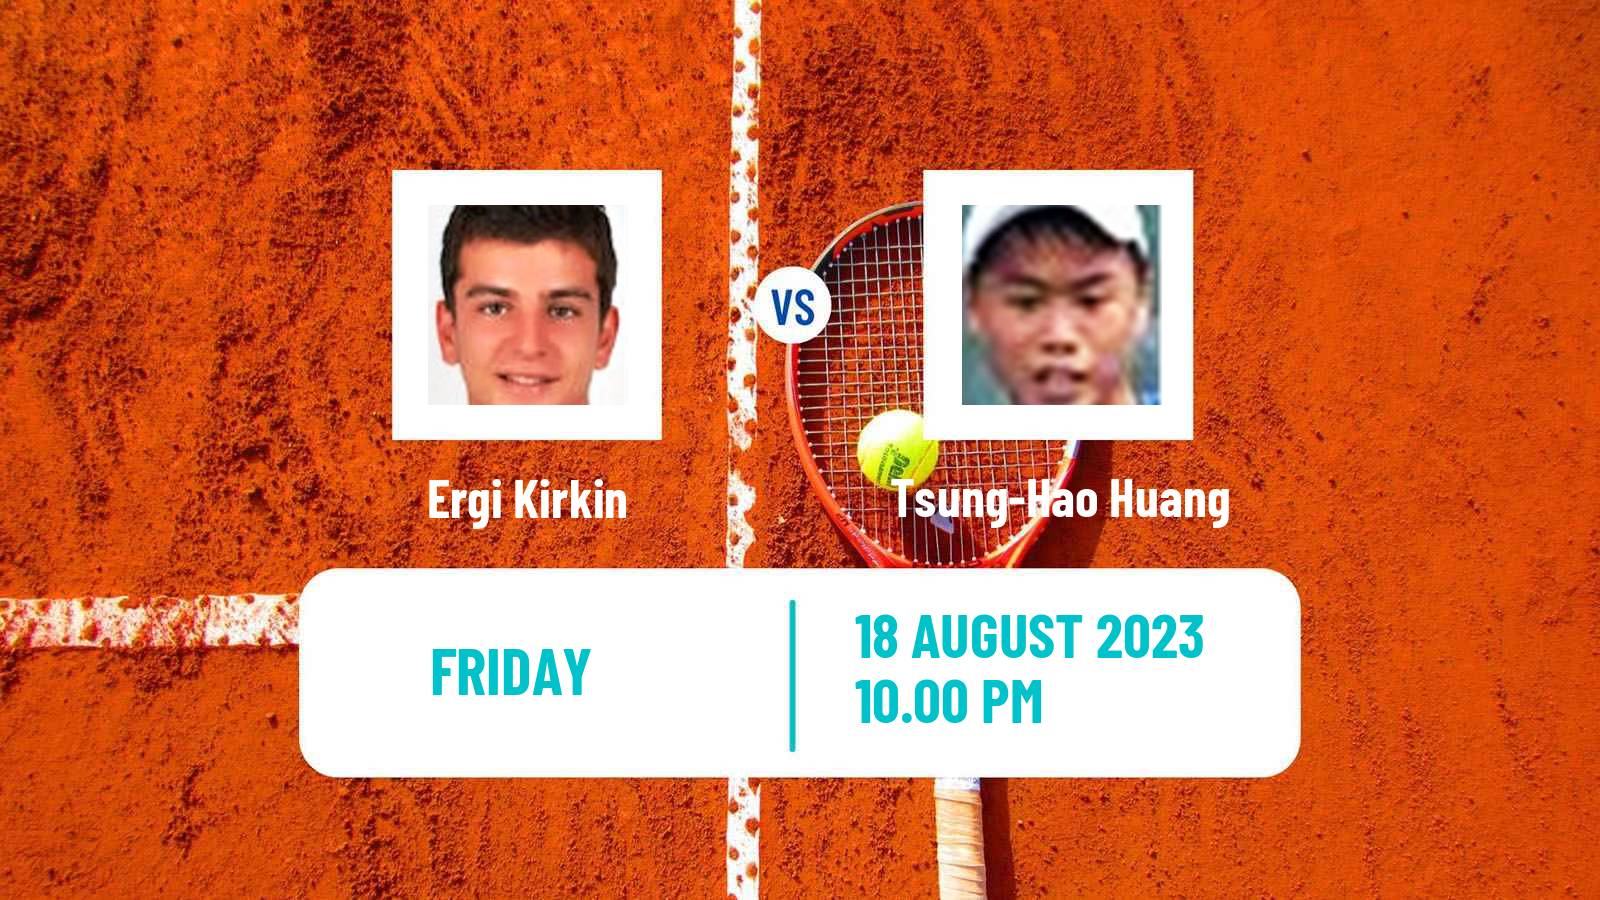 Tennis ITF M25 Tainan Men Ergi Kirkin - Tsung-Hao Huang